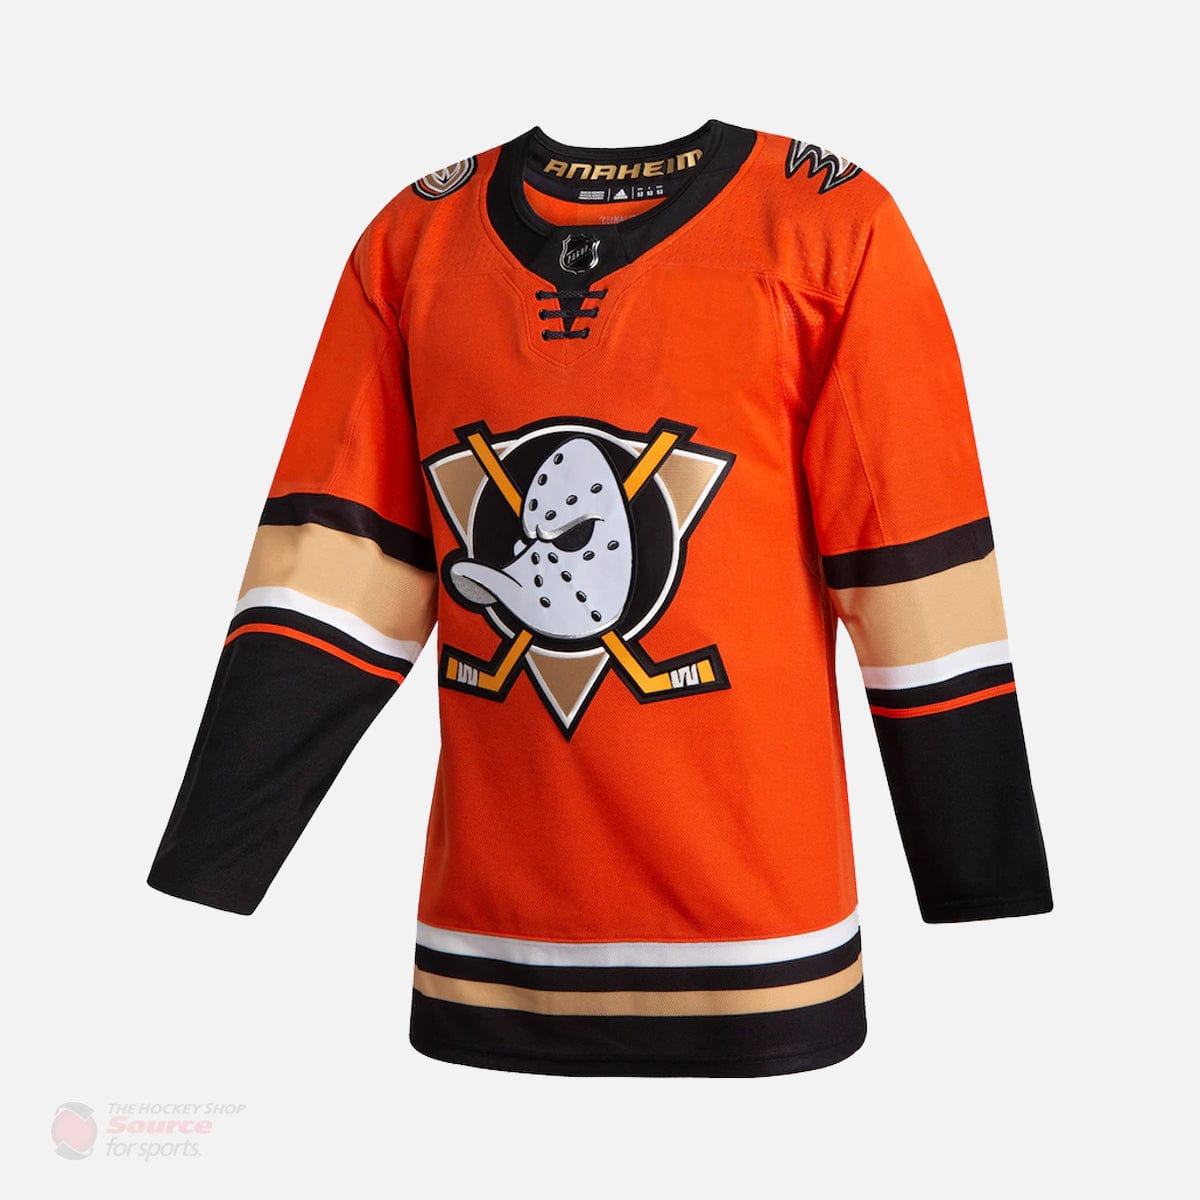 Anaheim Ducks Alternate Adidas Authentic Senior Jersey